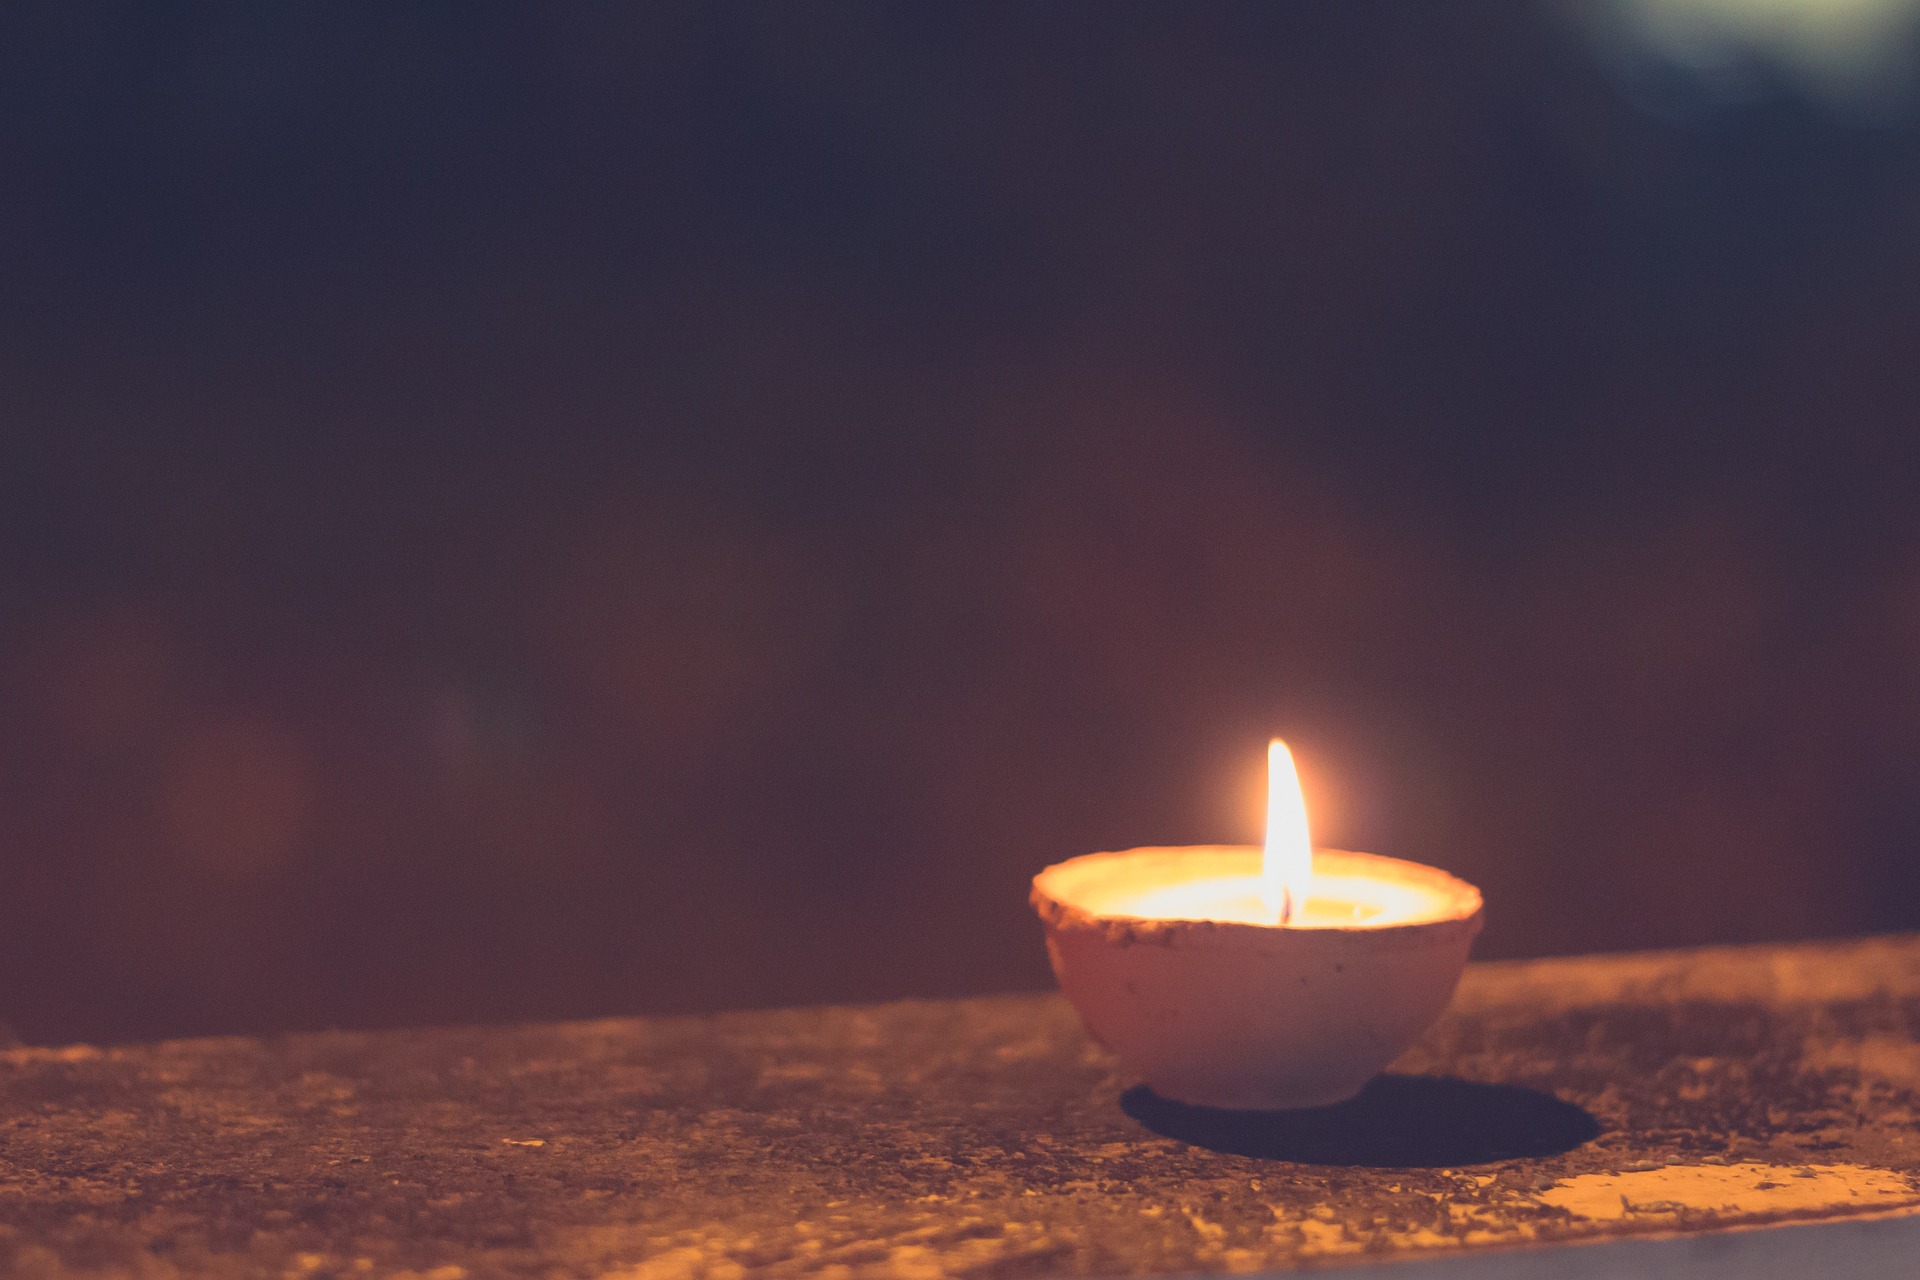 Symbolbild: Eine brennende Kerze als Zeichen der Hoffnung und Zuversicht in dunklen Zeiten